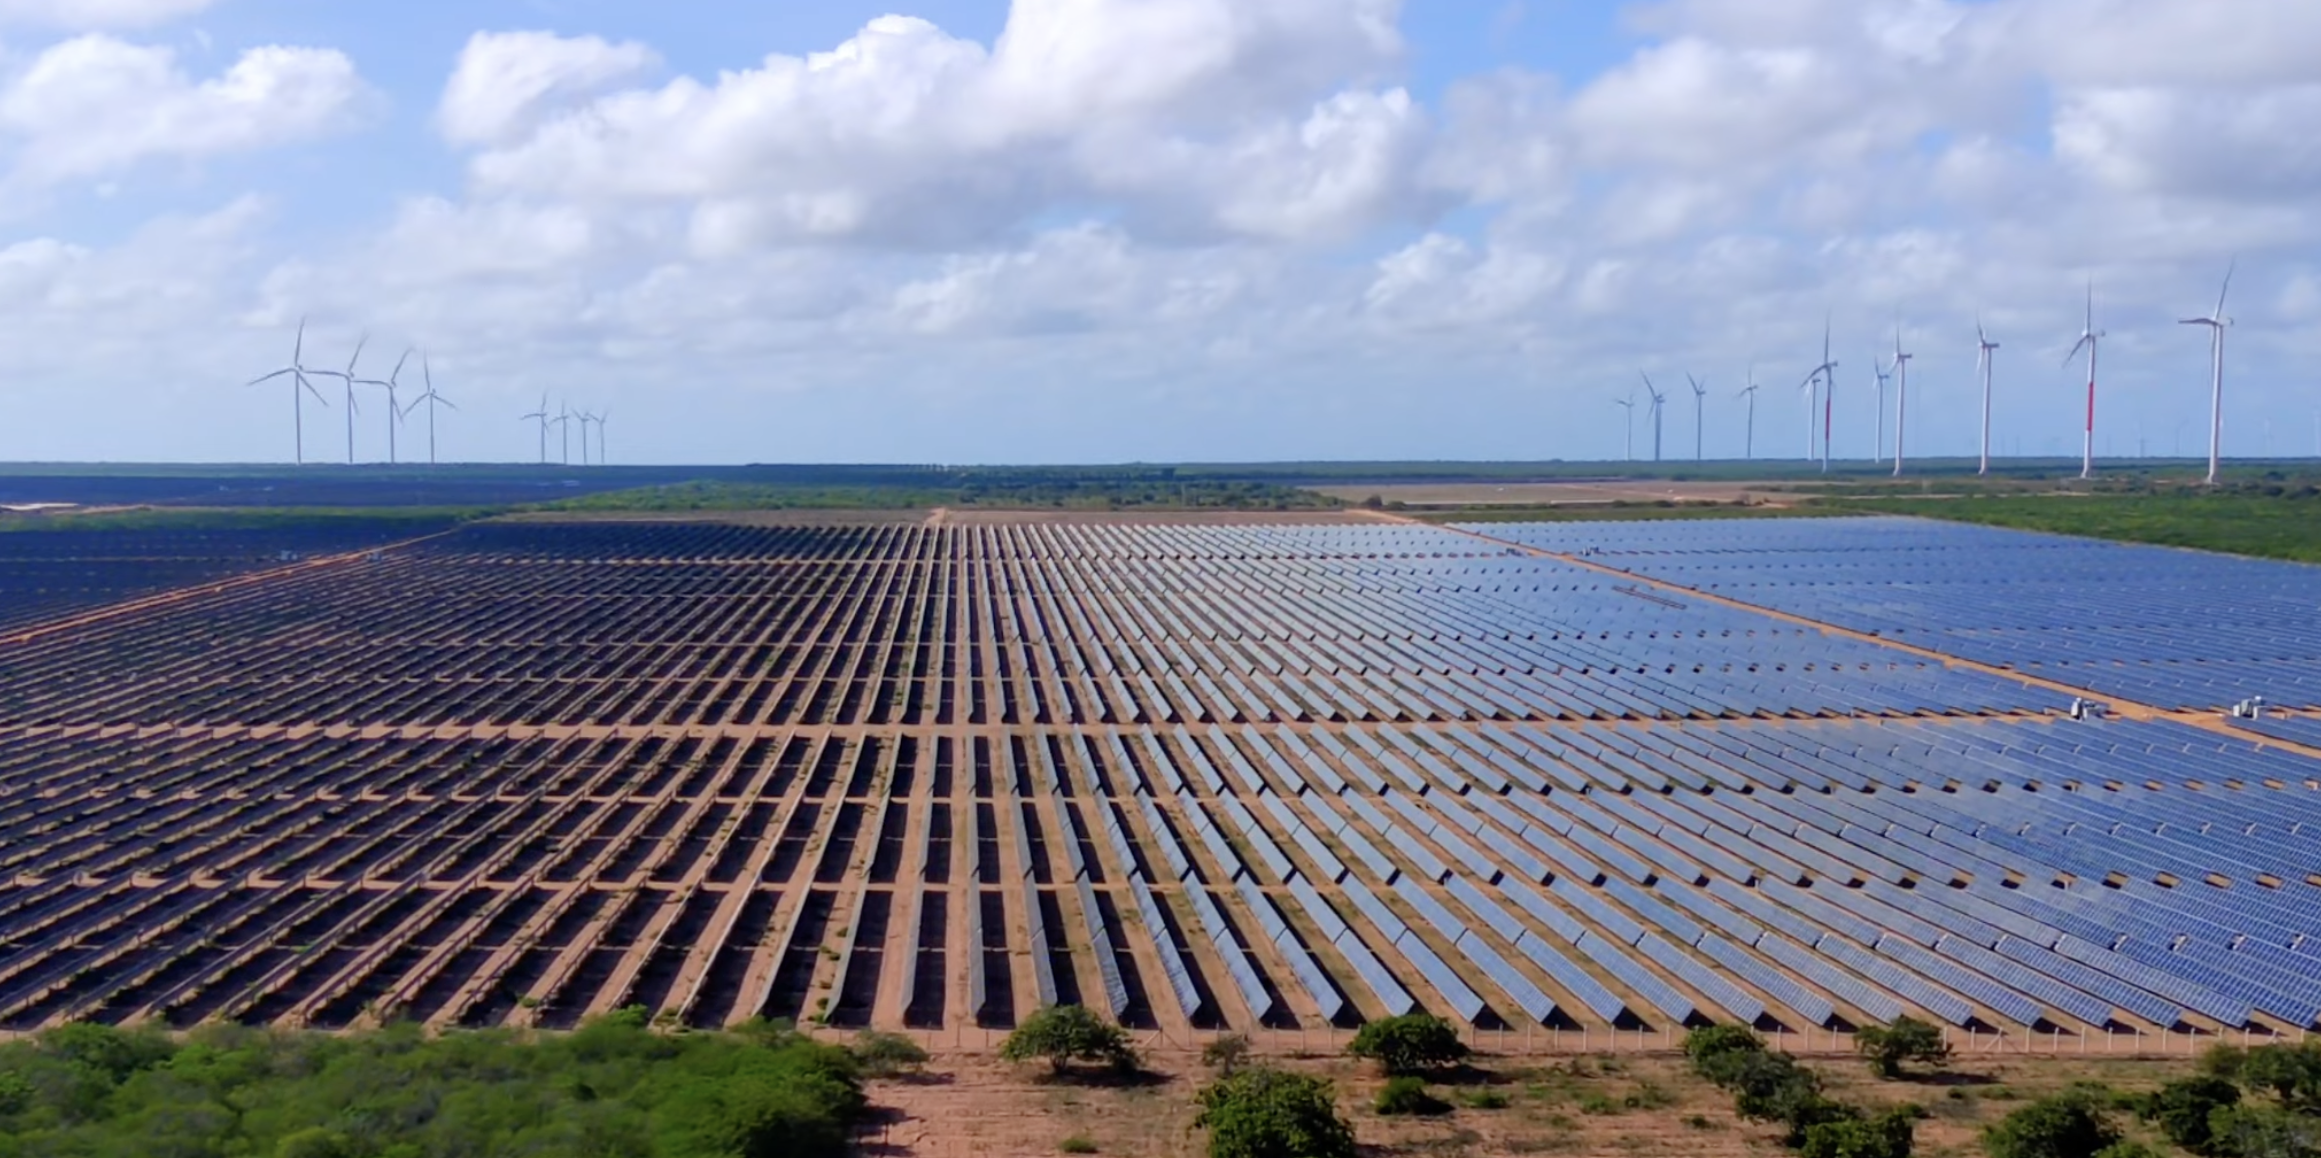 Usina solar fotovoltaica Serra do Mel da Voltalia, com turbinas eólicas ao fundo (Foto: Divulgação)